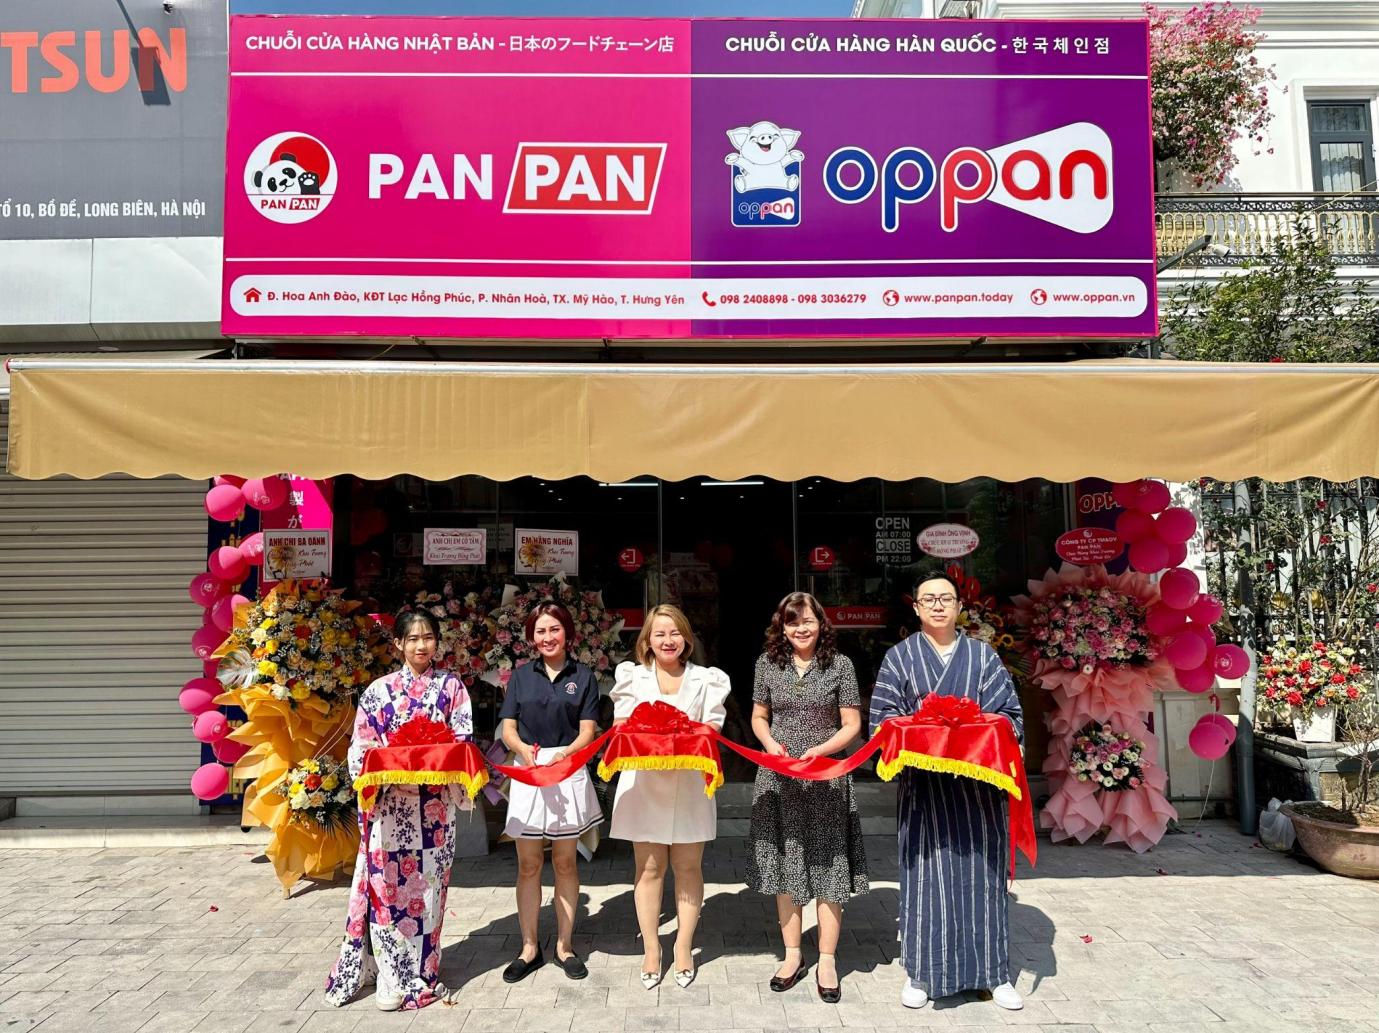 Panpan - Oppan khai trương chuỗi cửa hàng mới tại Hưng Yên - 1